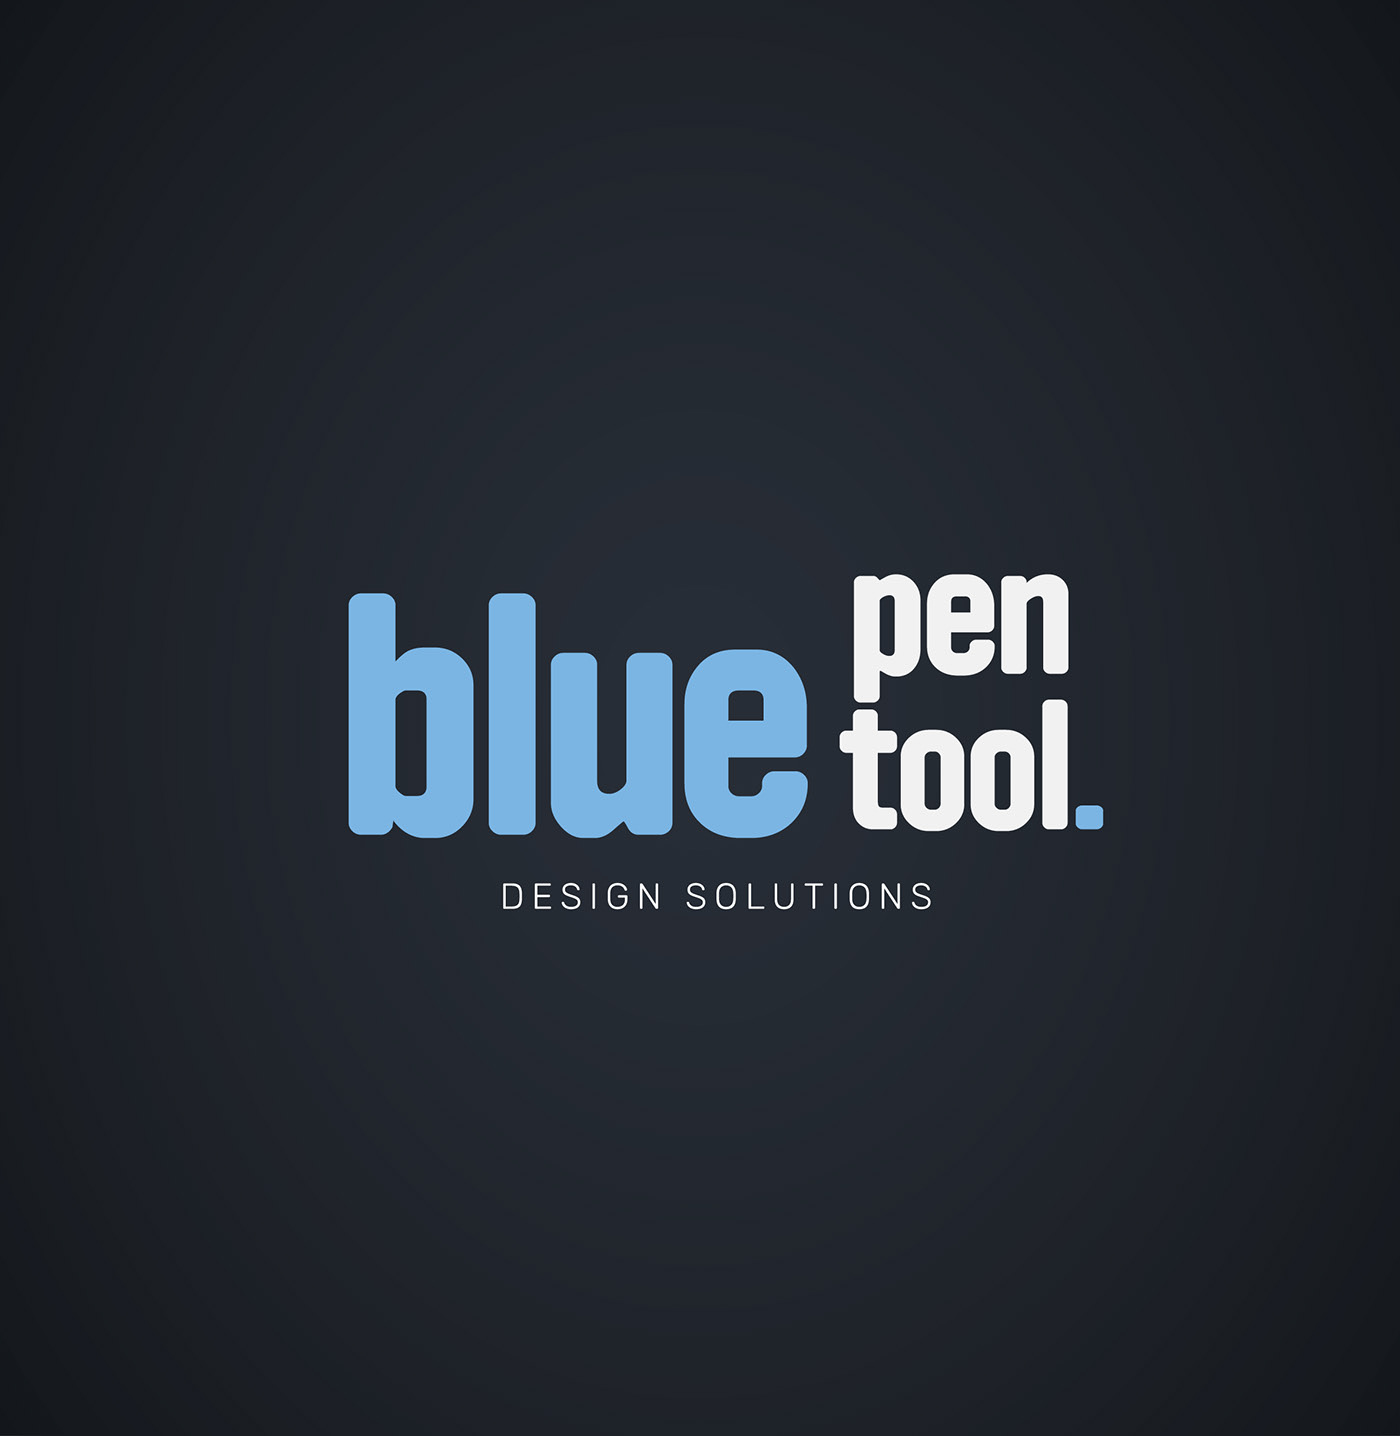 blue bluepentool design graphic Like logo